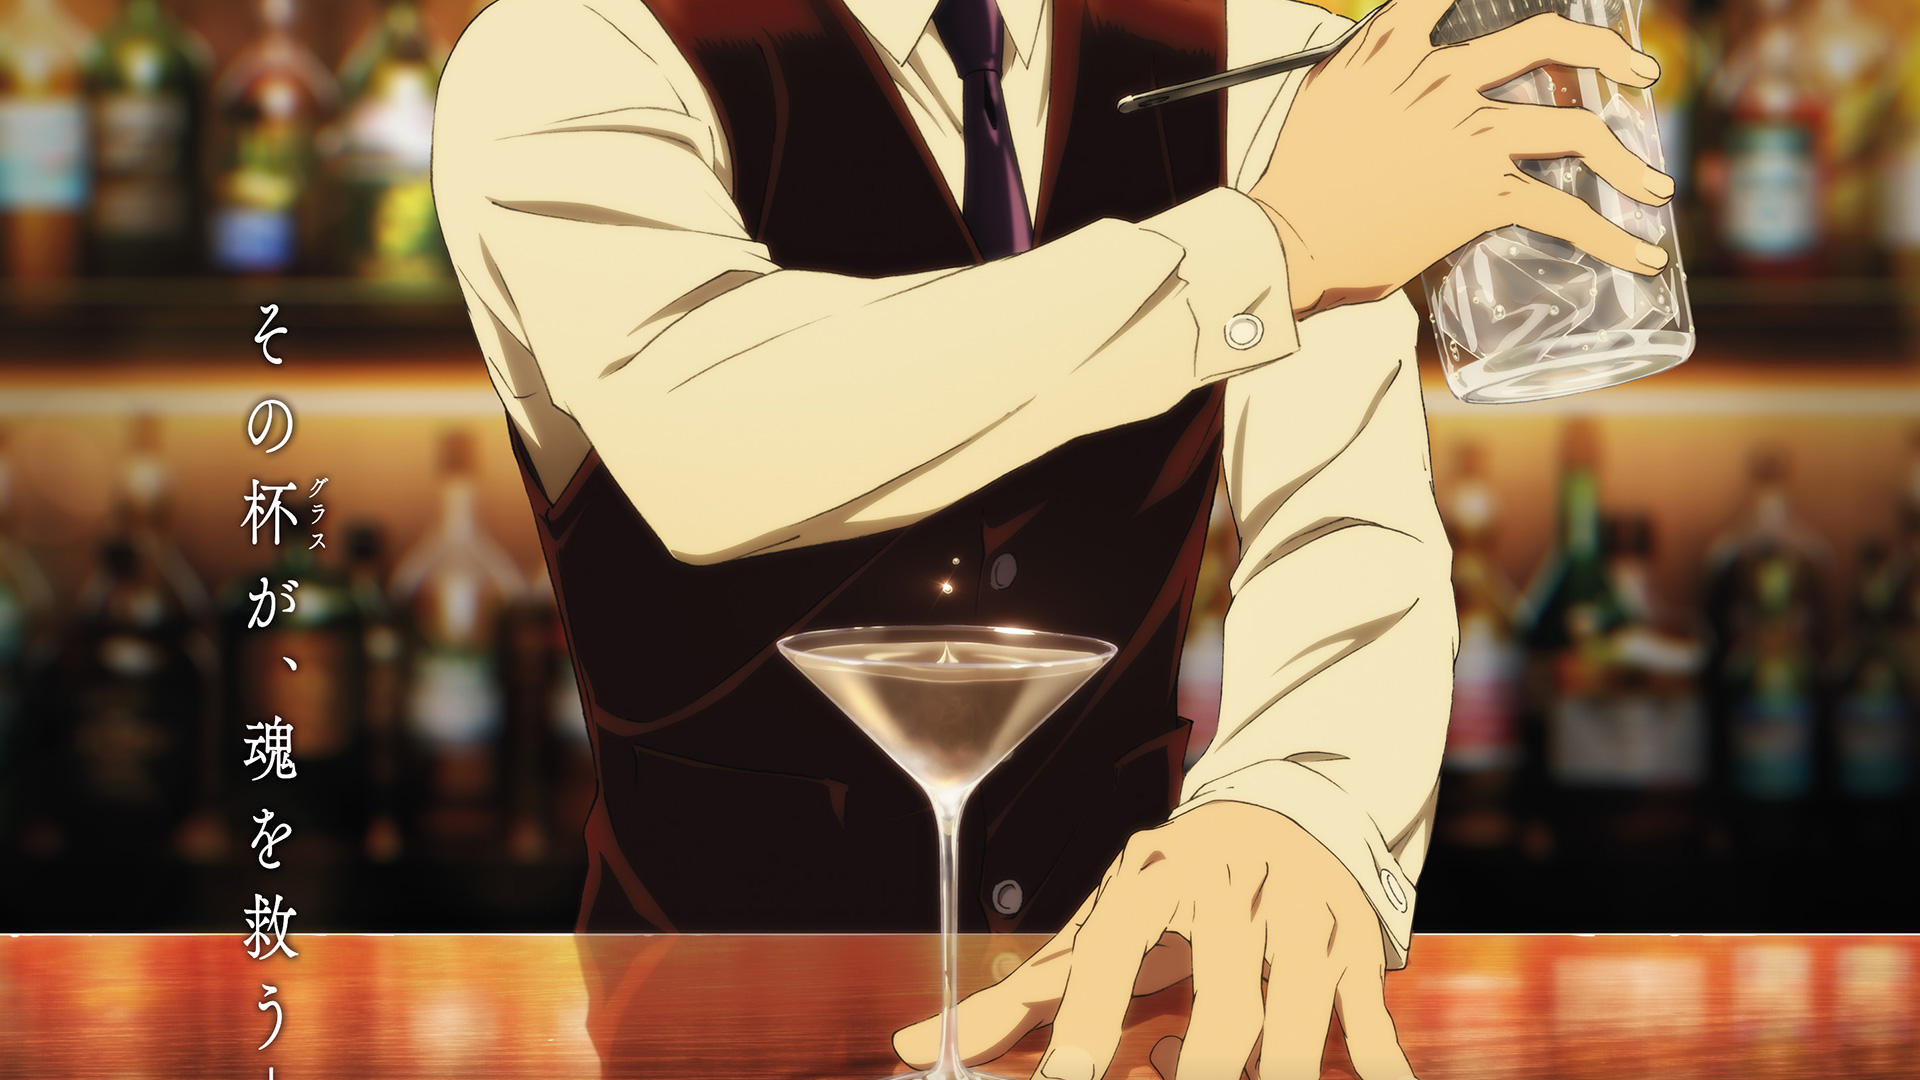 Bartender Glass of God anime teaser visual 2 1